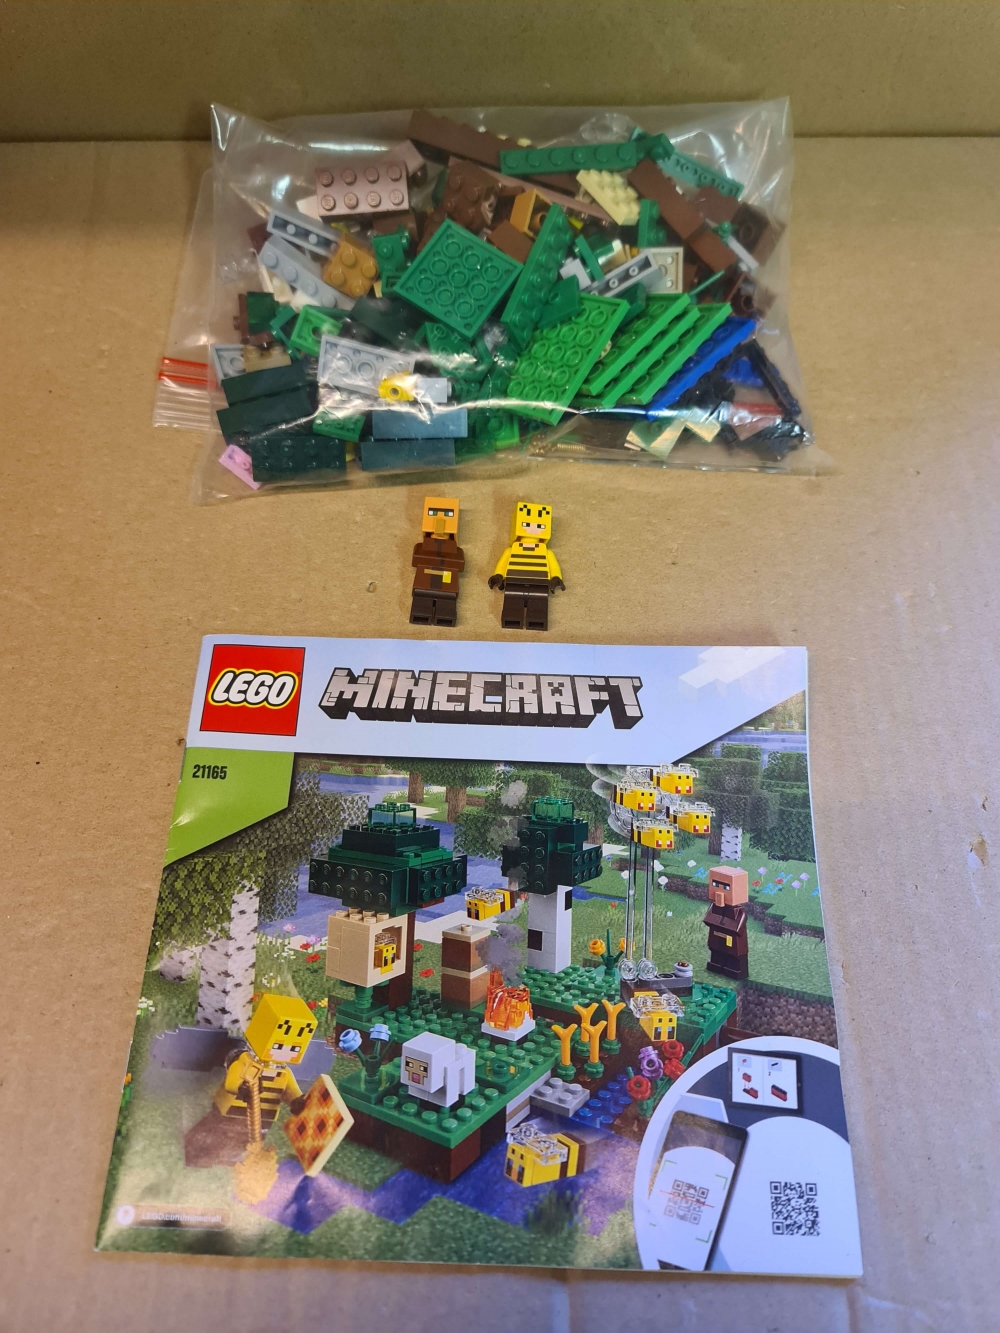 Sett 21165 fra Lego Minecraft serien.
Som nytt.
Komplett med manual og eske.